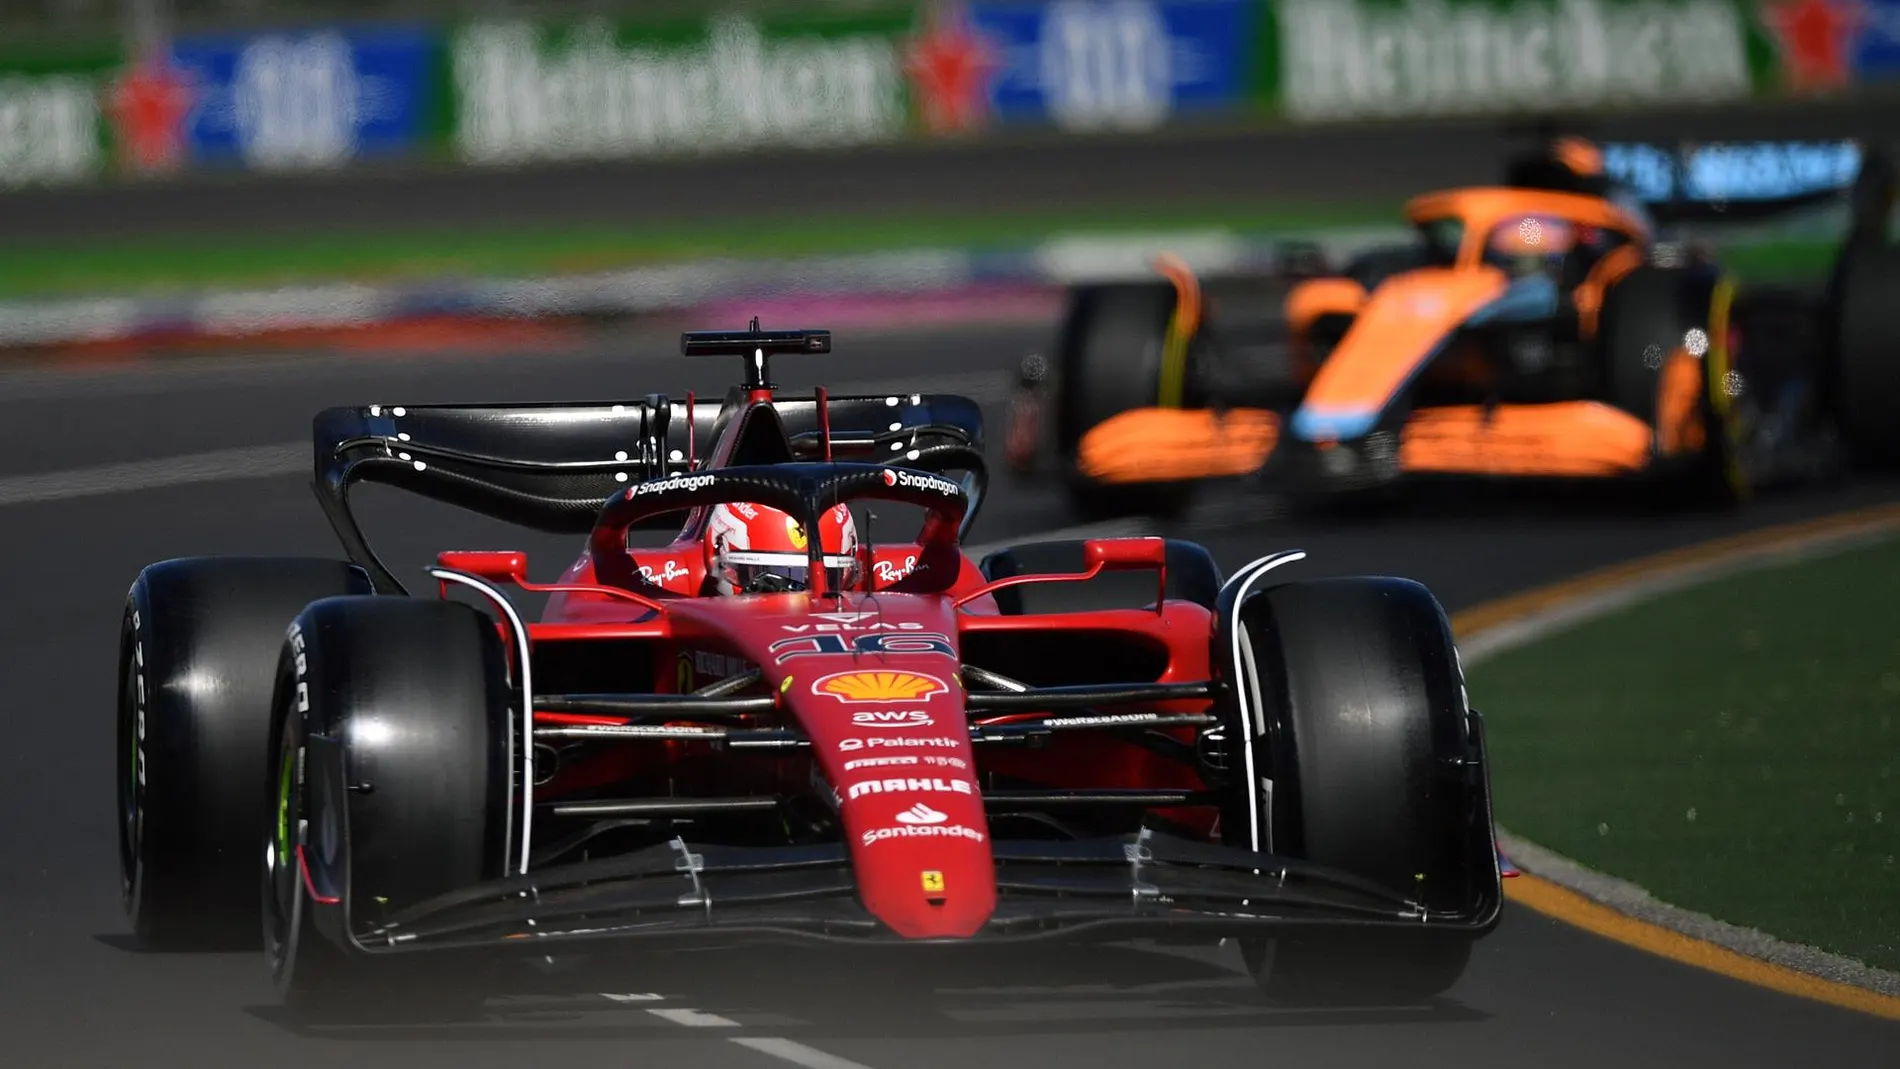 Los Ferrari dominan en los primeros libres del GP de Australia